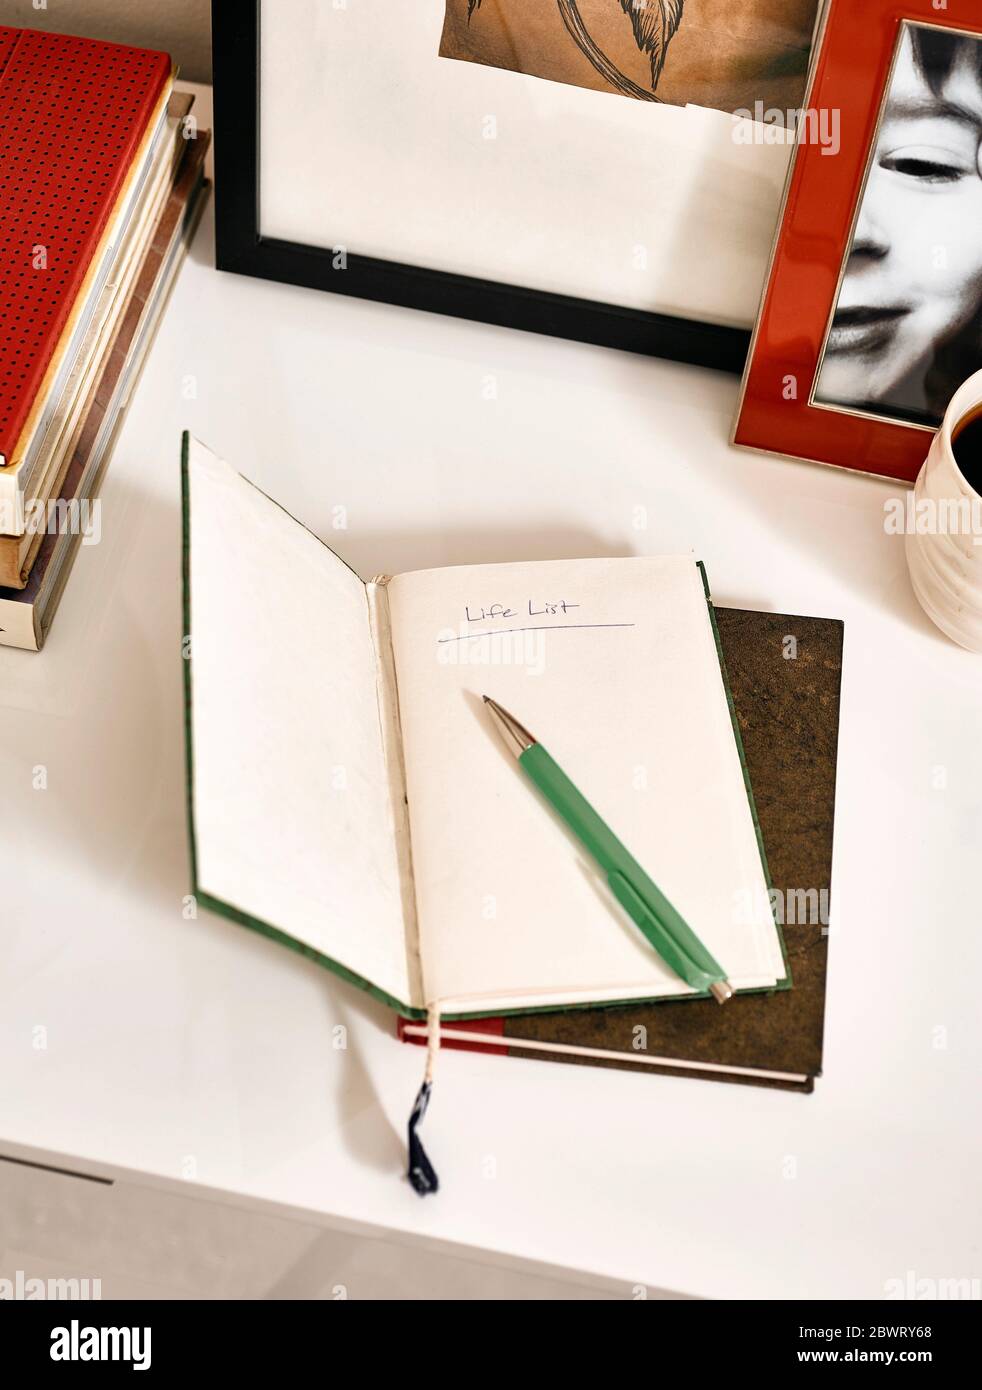 Un bloc-notes ouvert avec ''liste de vie'' écrit avec un stylo vert. Banque D'Images